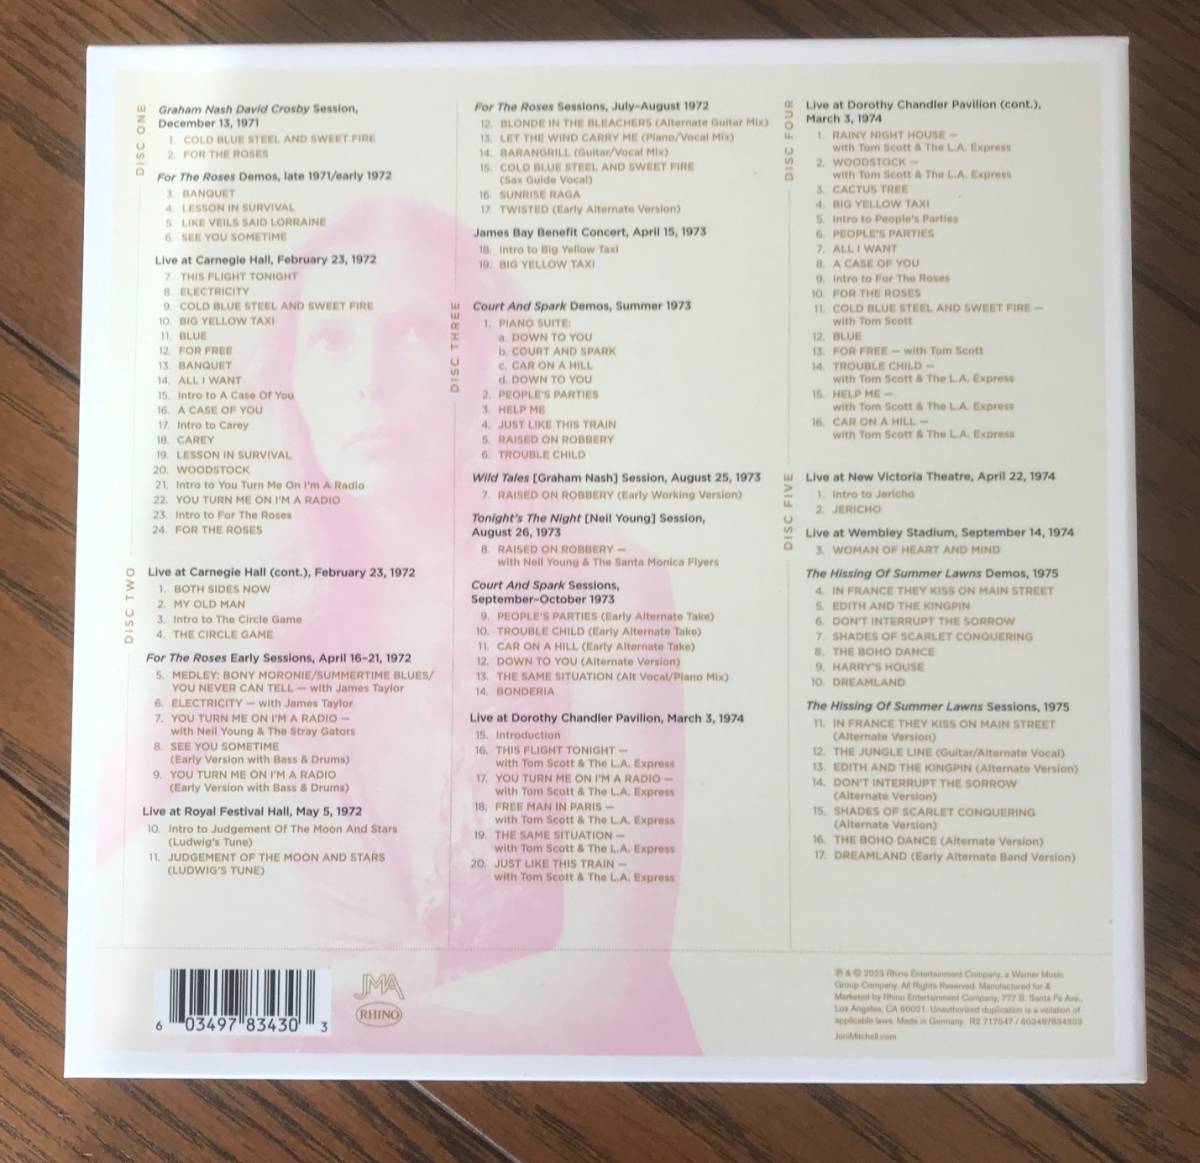 ほぼ新品 / 国内盤 / Joni Mitchell / ARCHIVES Vol.3 /THE ASYLUM YEARS 1972-1975 CD 5枚組み アーカイブス Vol.3 アサイラム・イヤーズ _画像7